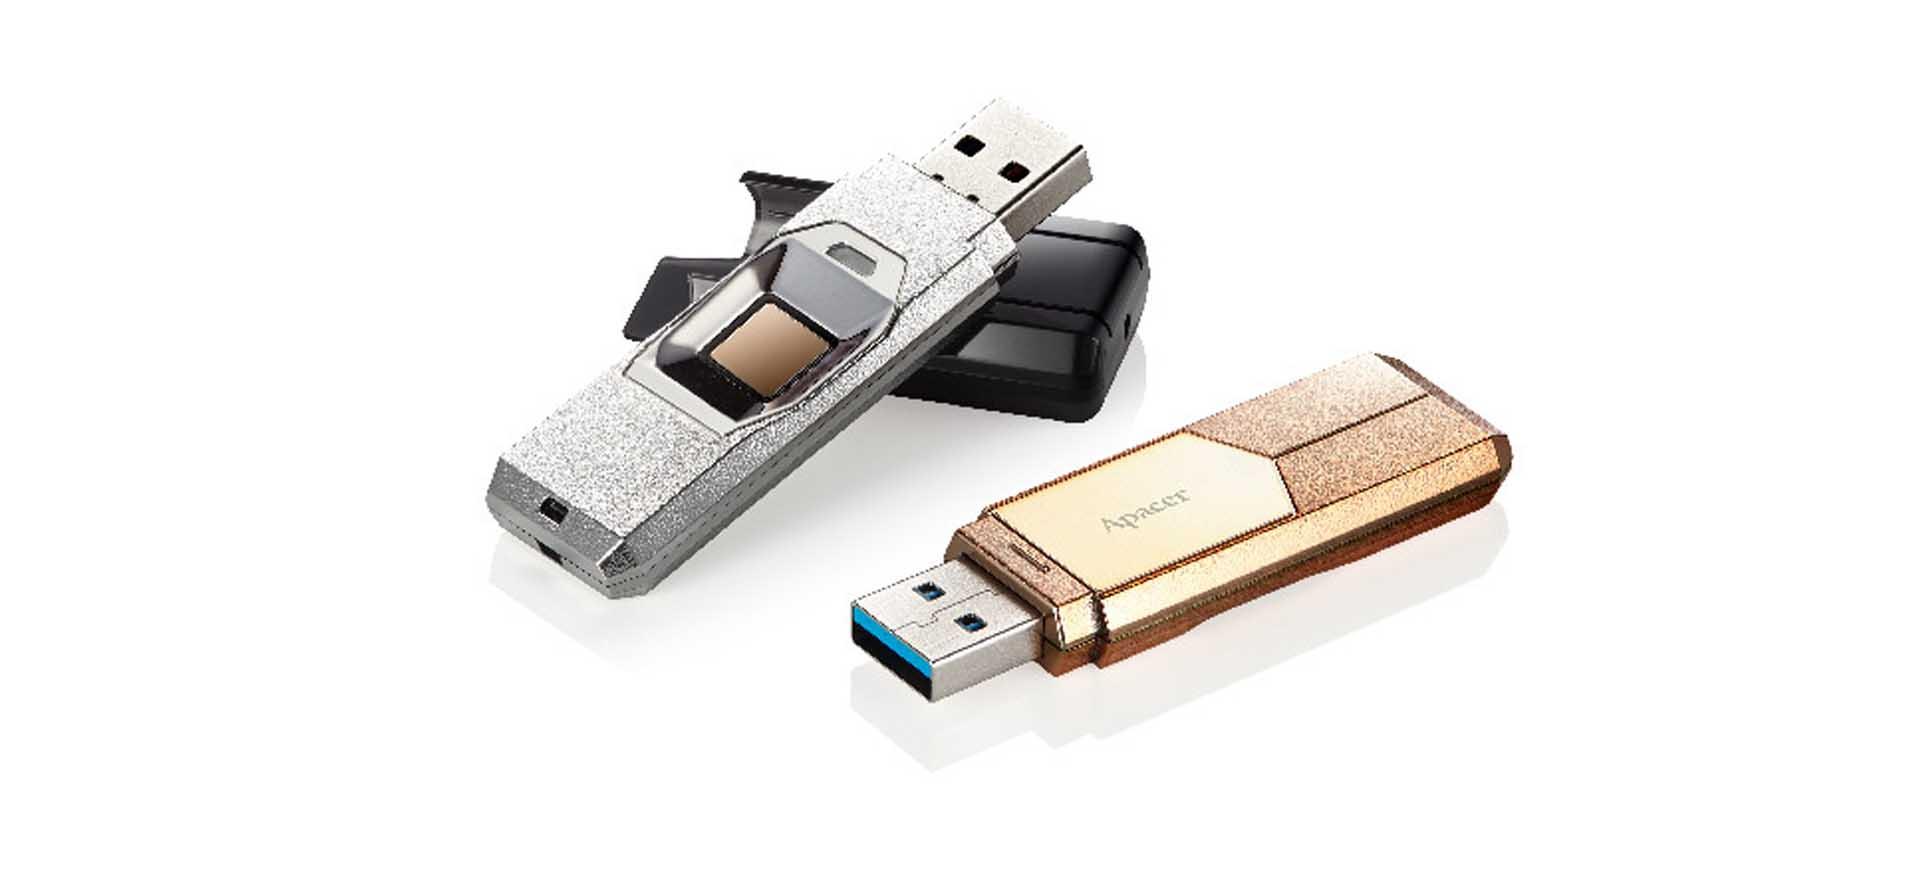 Siêu USB "AH650" bảo mật vân tay từ Apacer